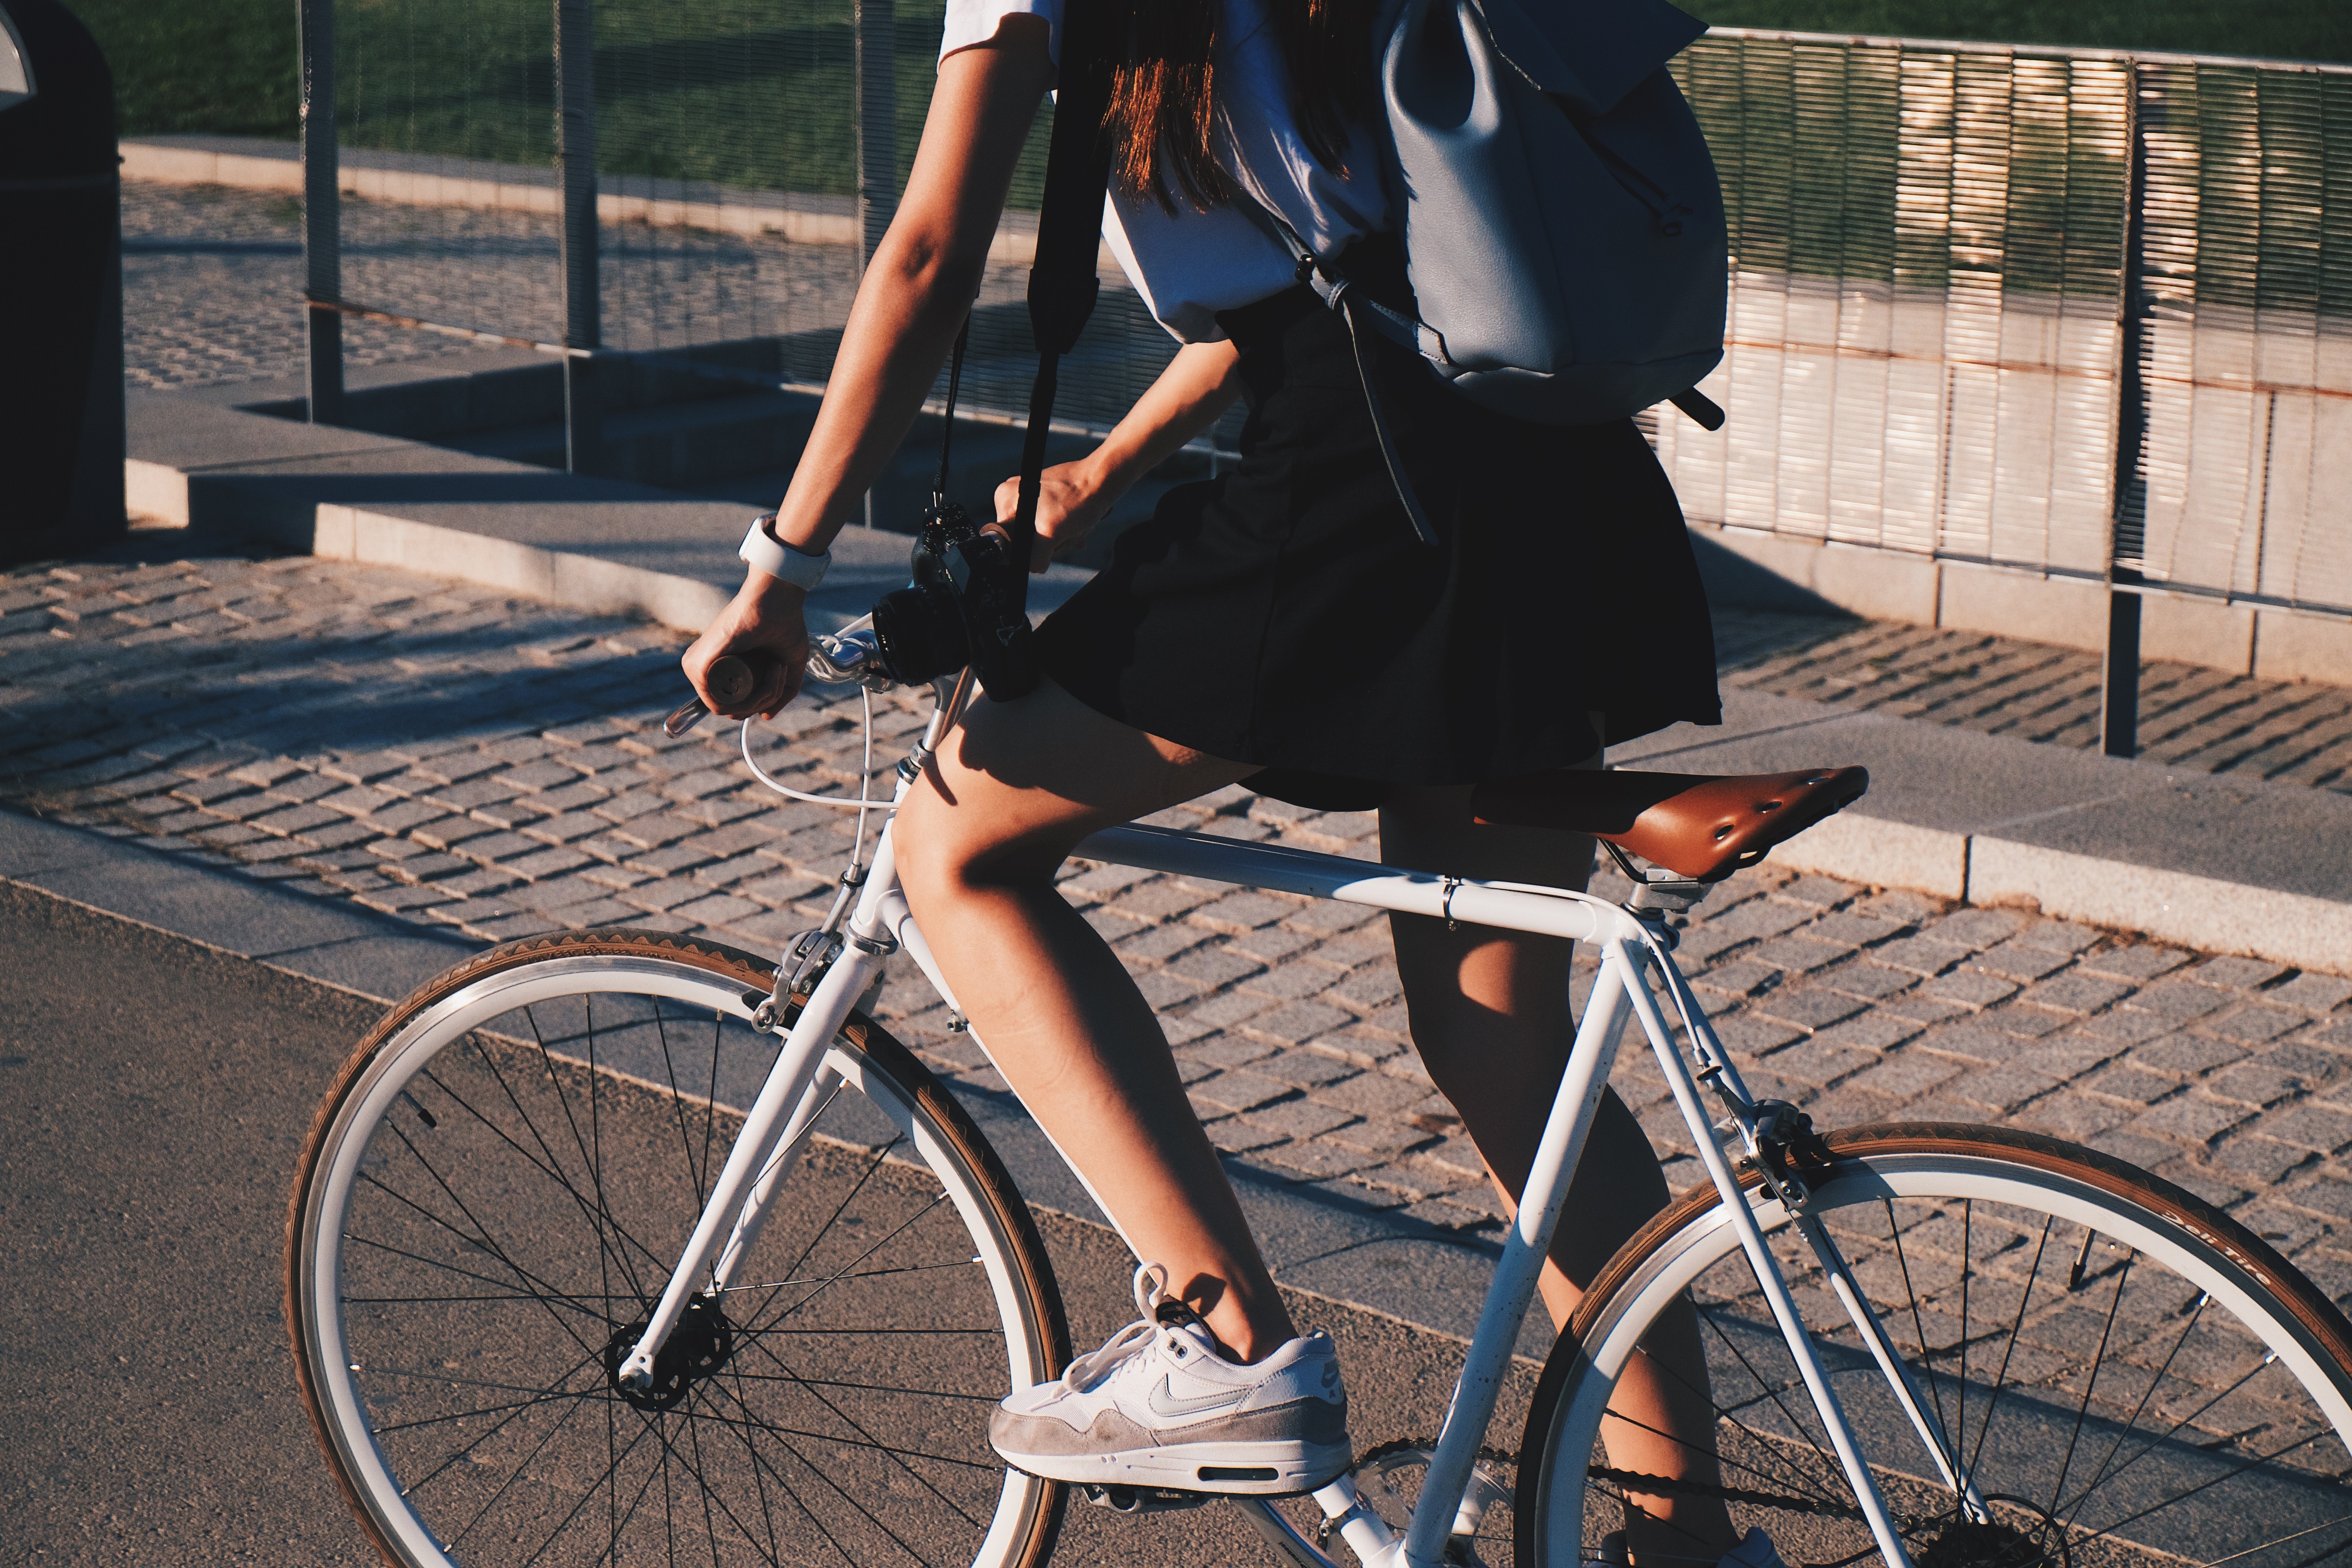 Яких правил потрібно дотримуватися під час їзди на велосипеді?